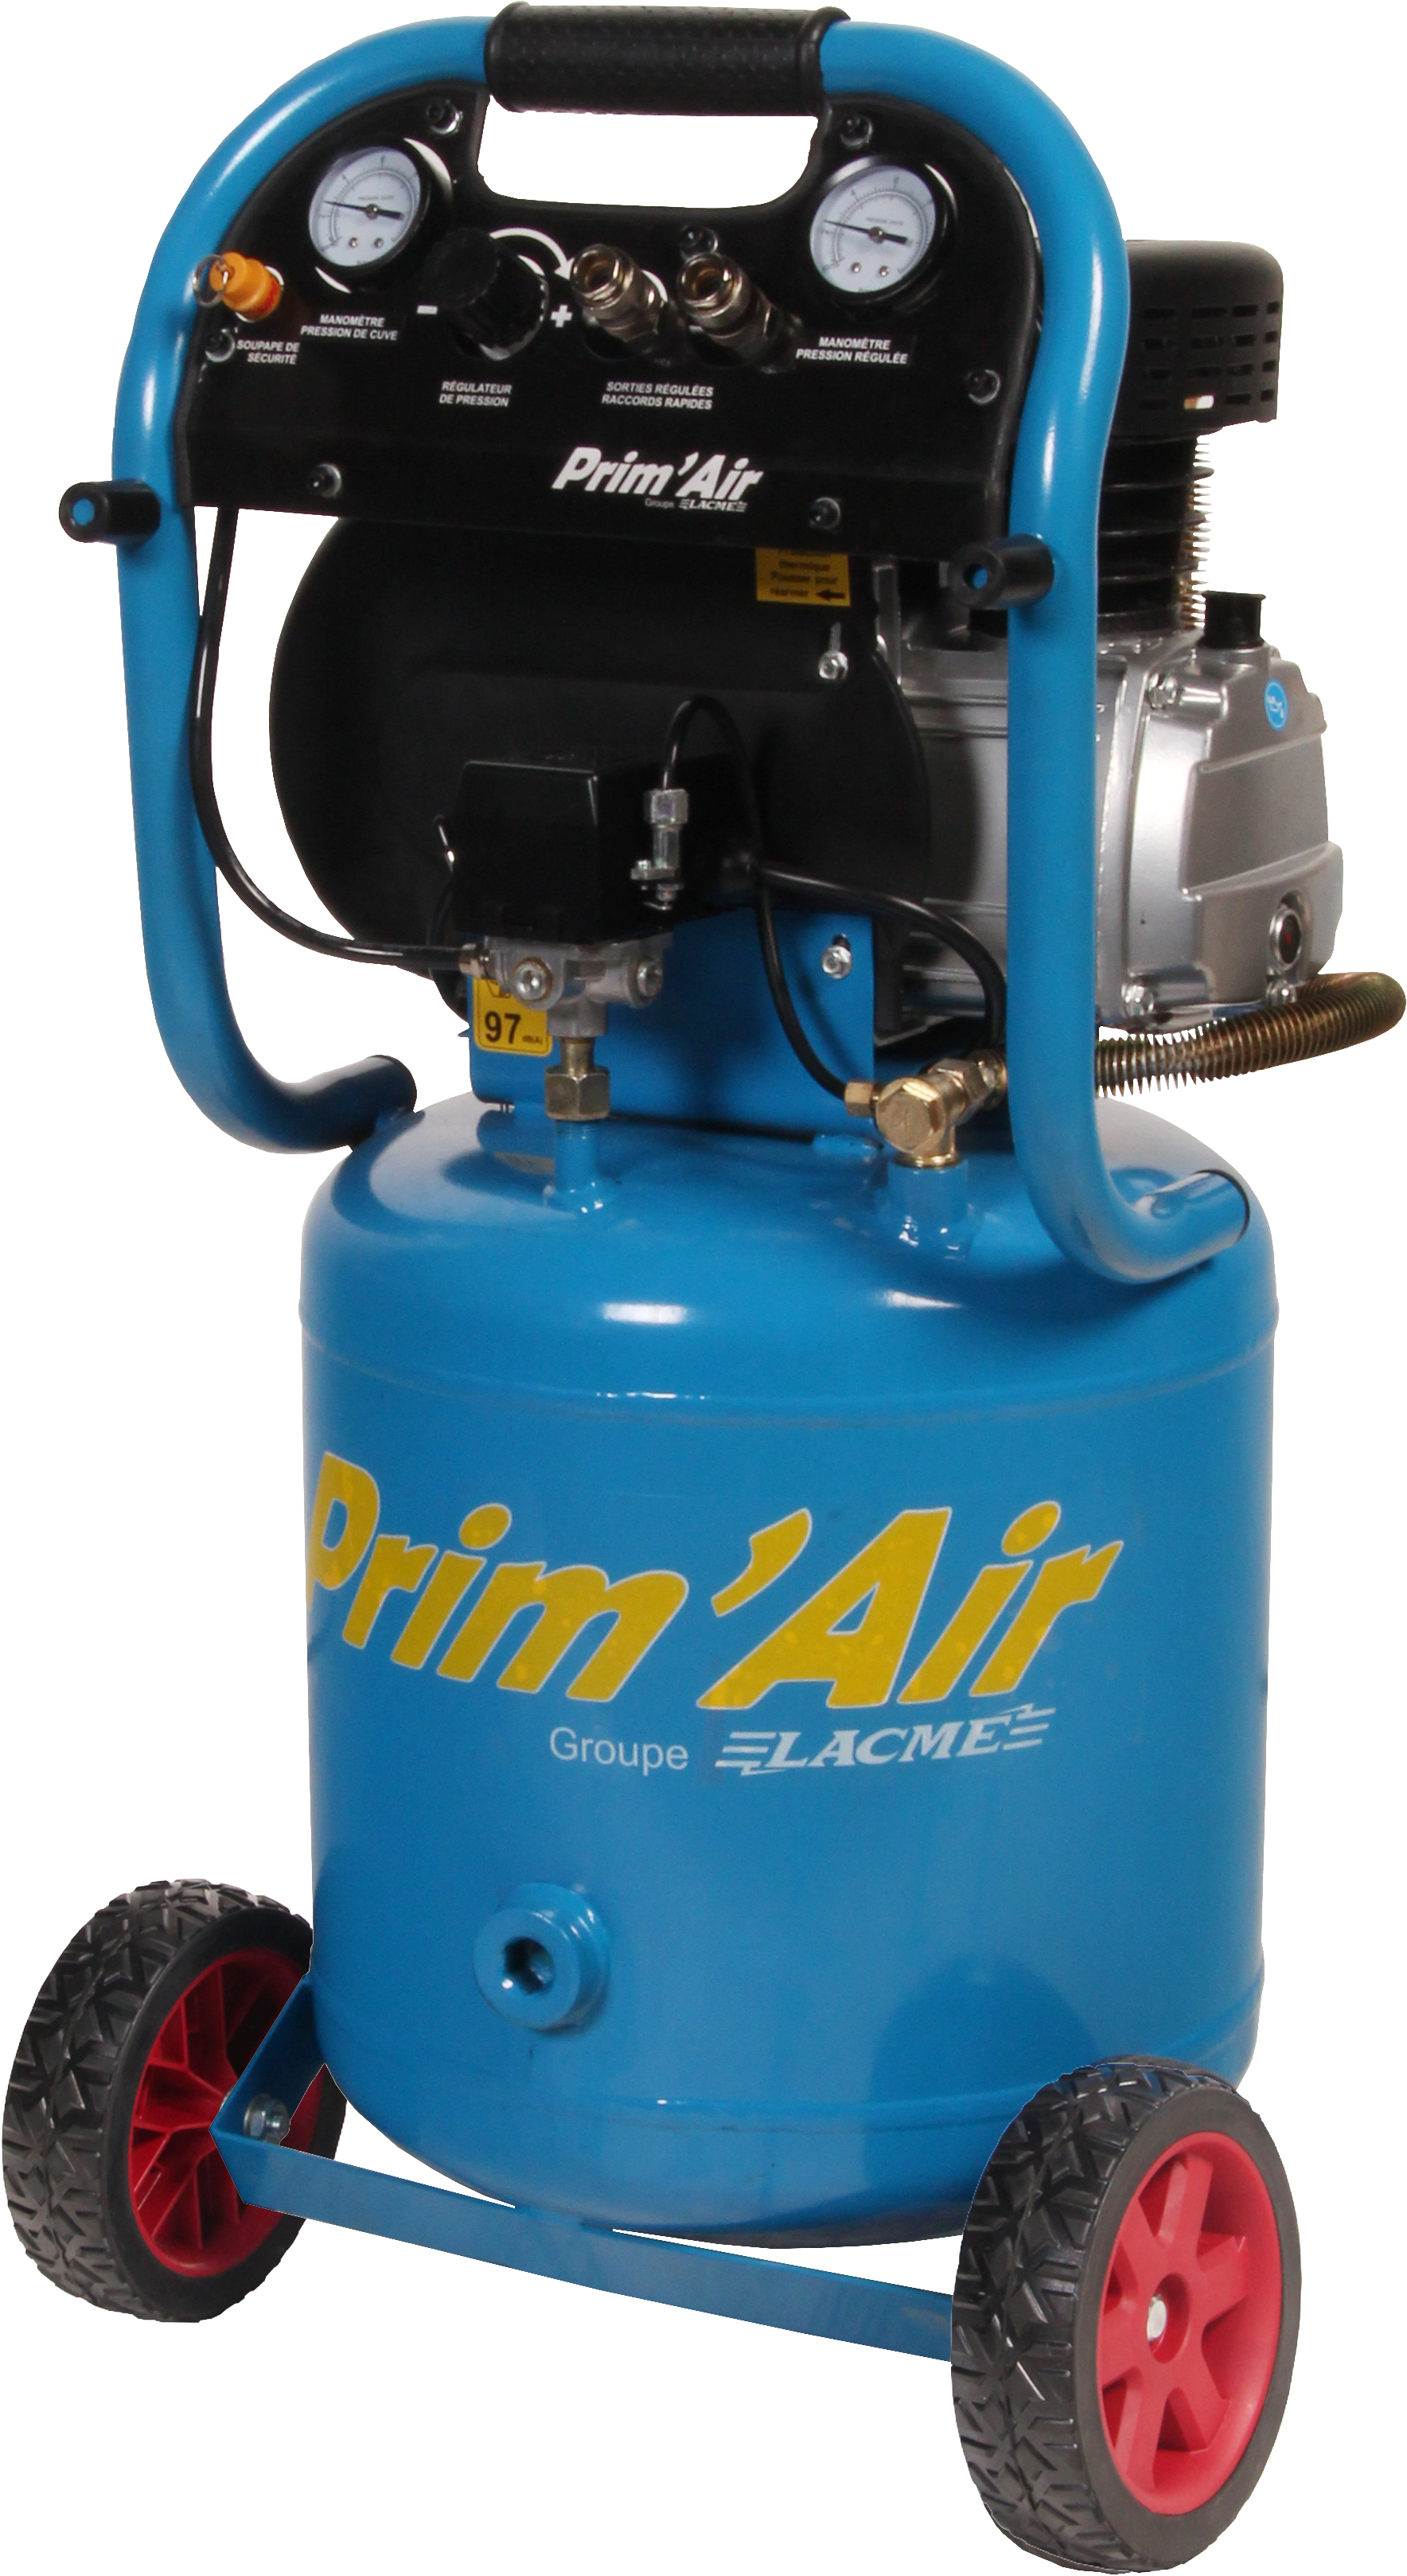 Compresseur d'air peu encombrement avec sa cuve verticale de 40 litres pour une solution au meilleur prix avec la gamme Prim'air Lacmé à disposition